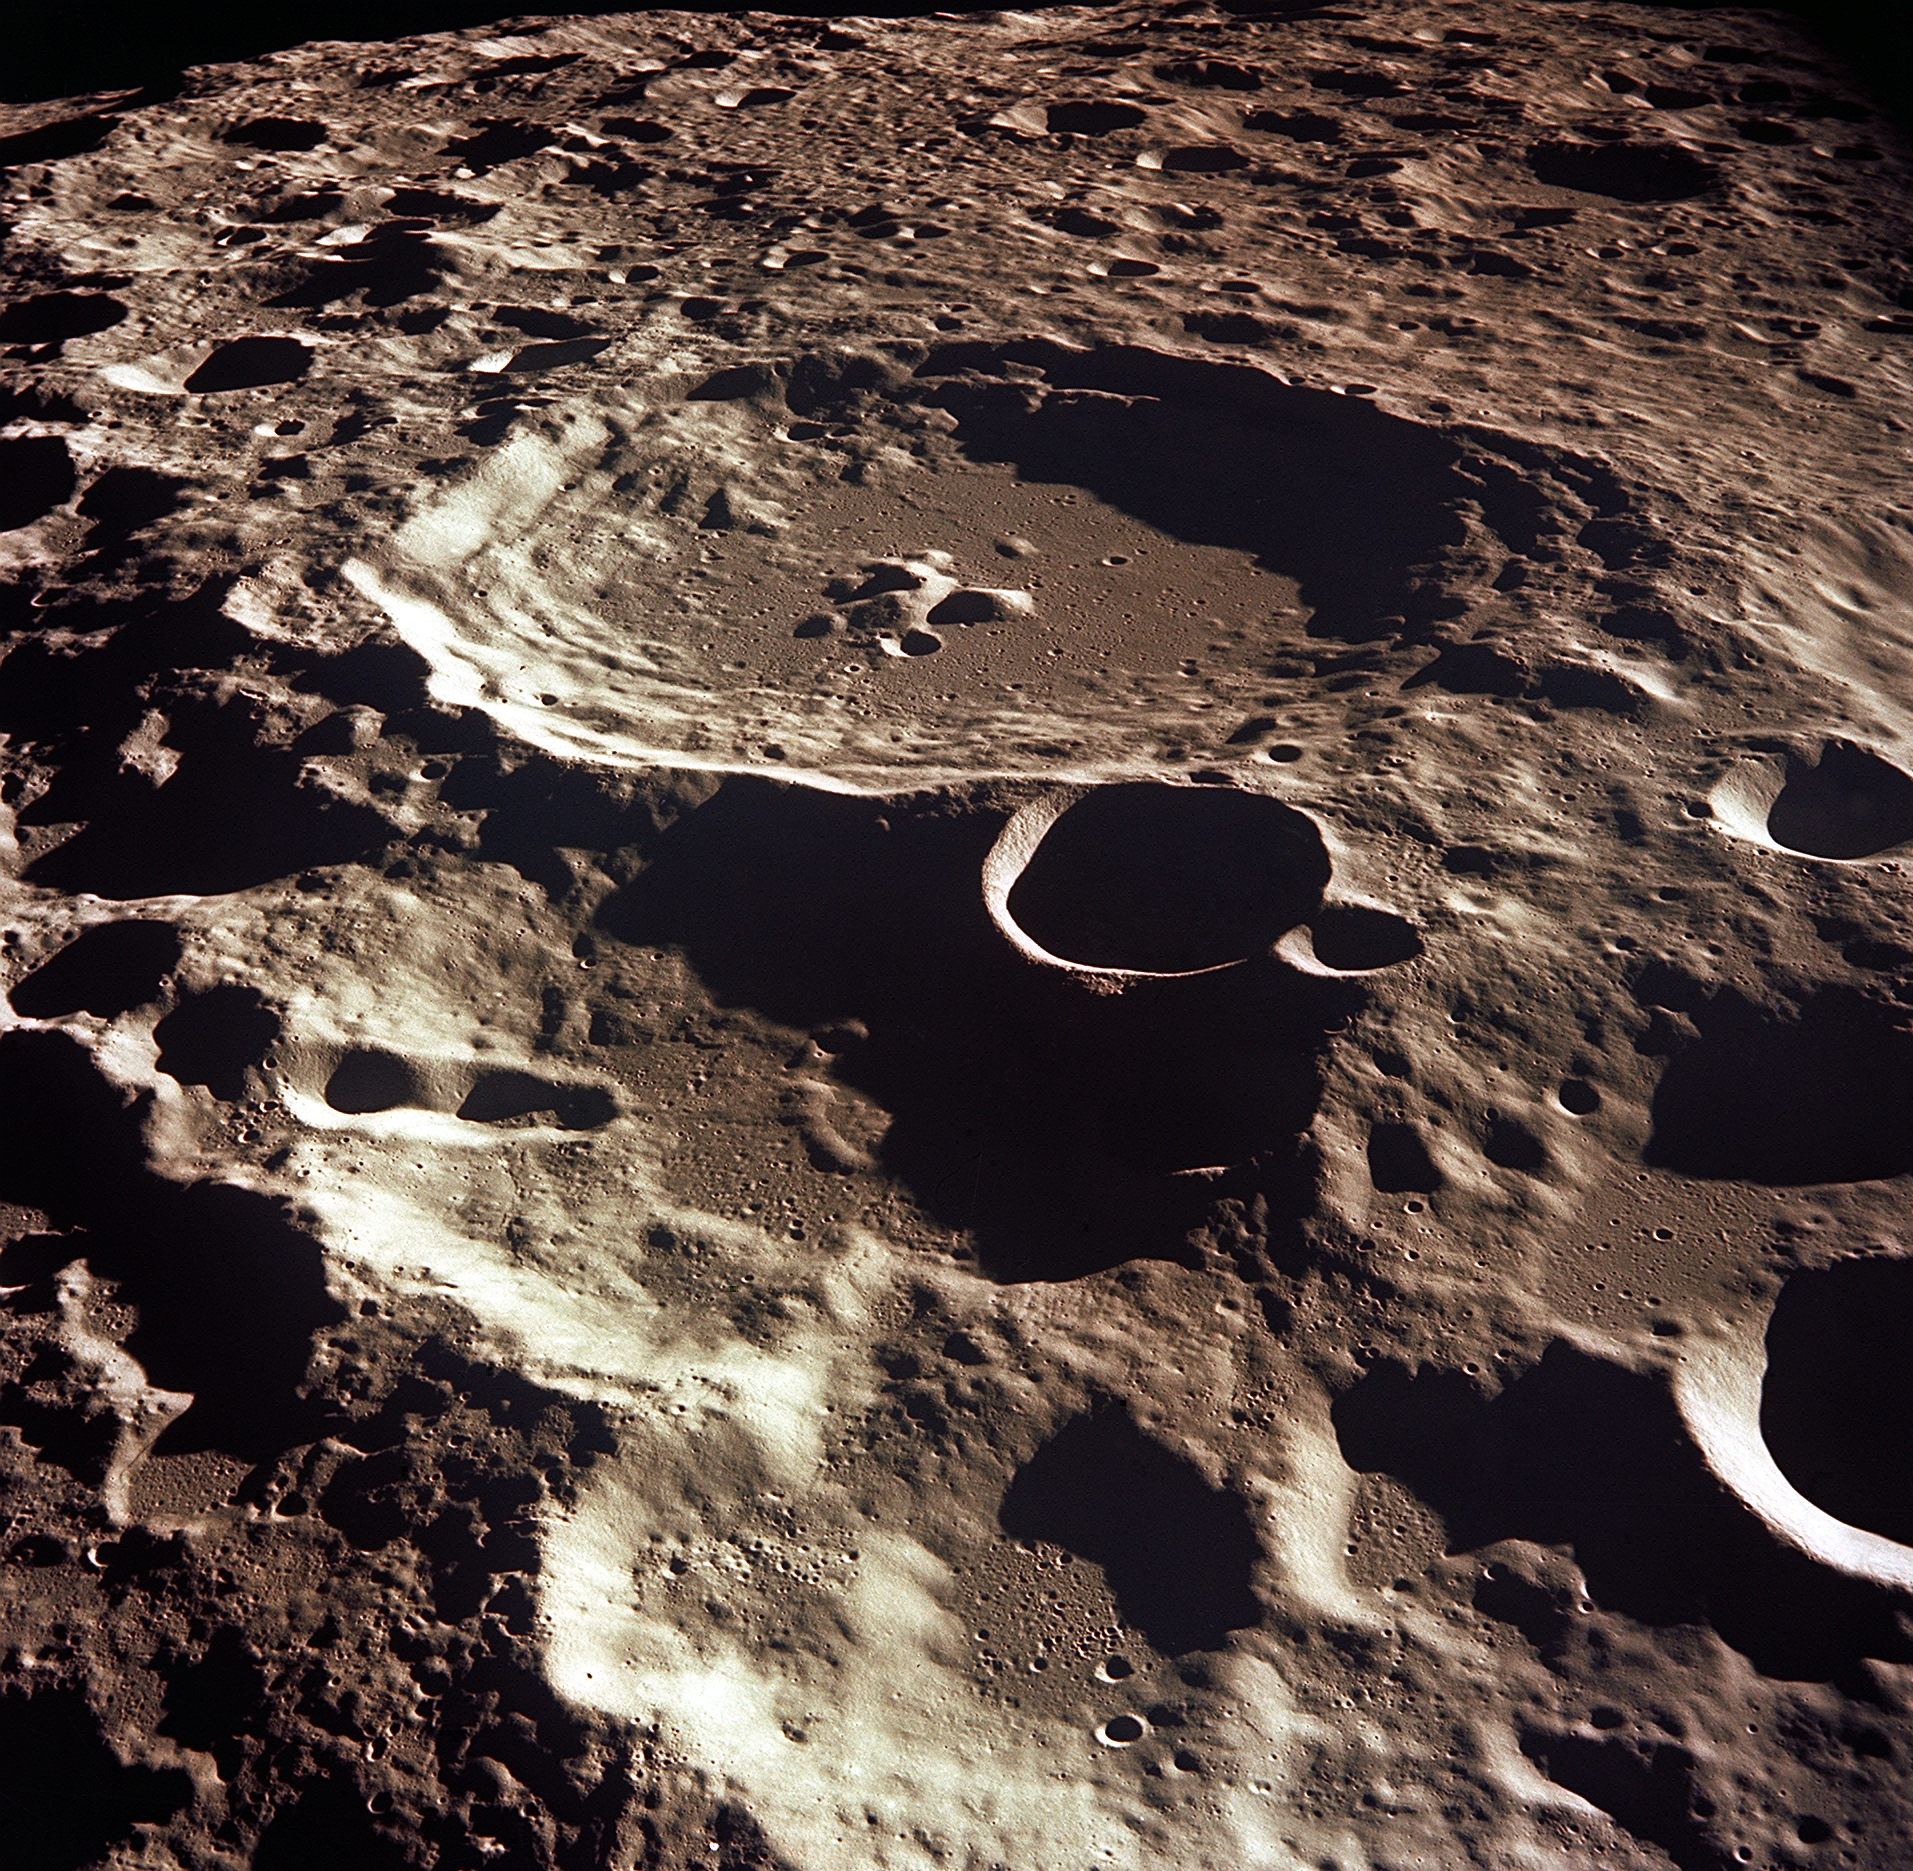 Rover chino mapea 300 metros de ‘estructuras’ escondidas bajo el lado oscuro de la luna